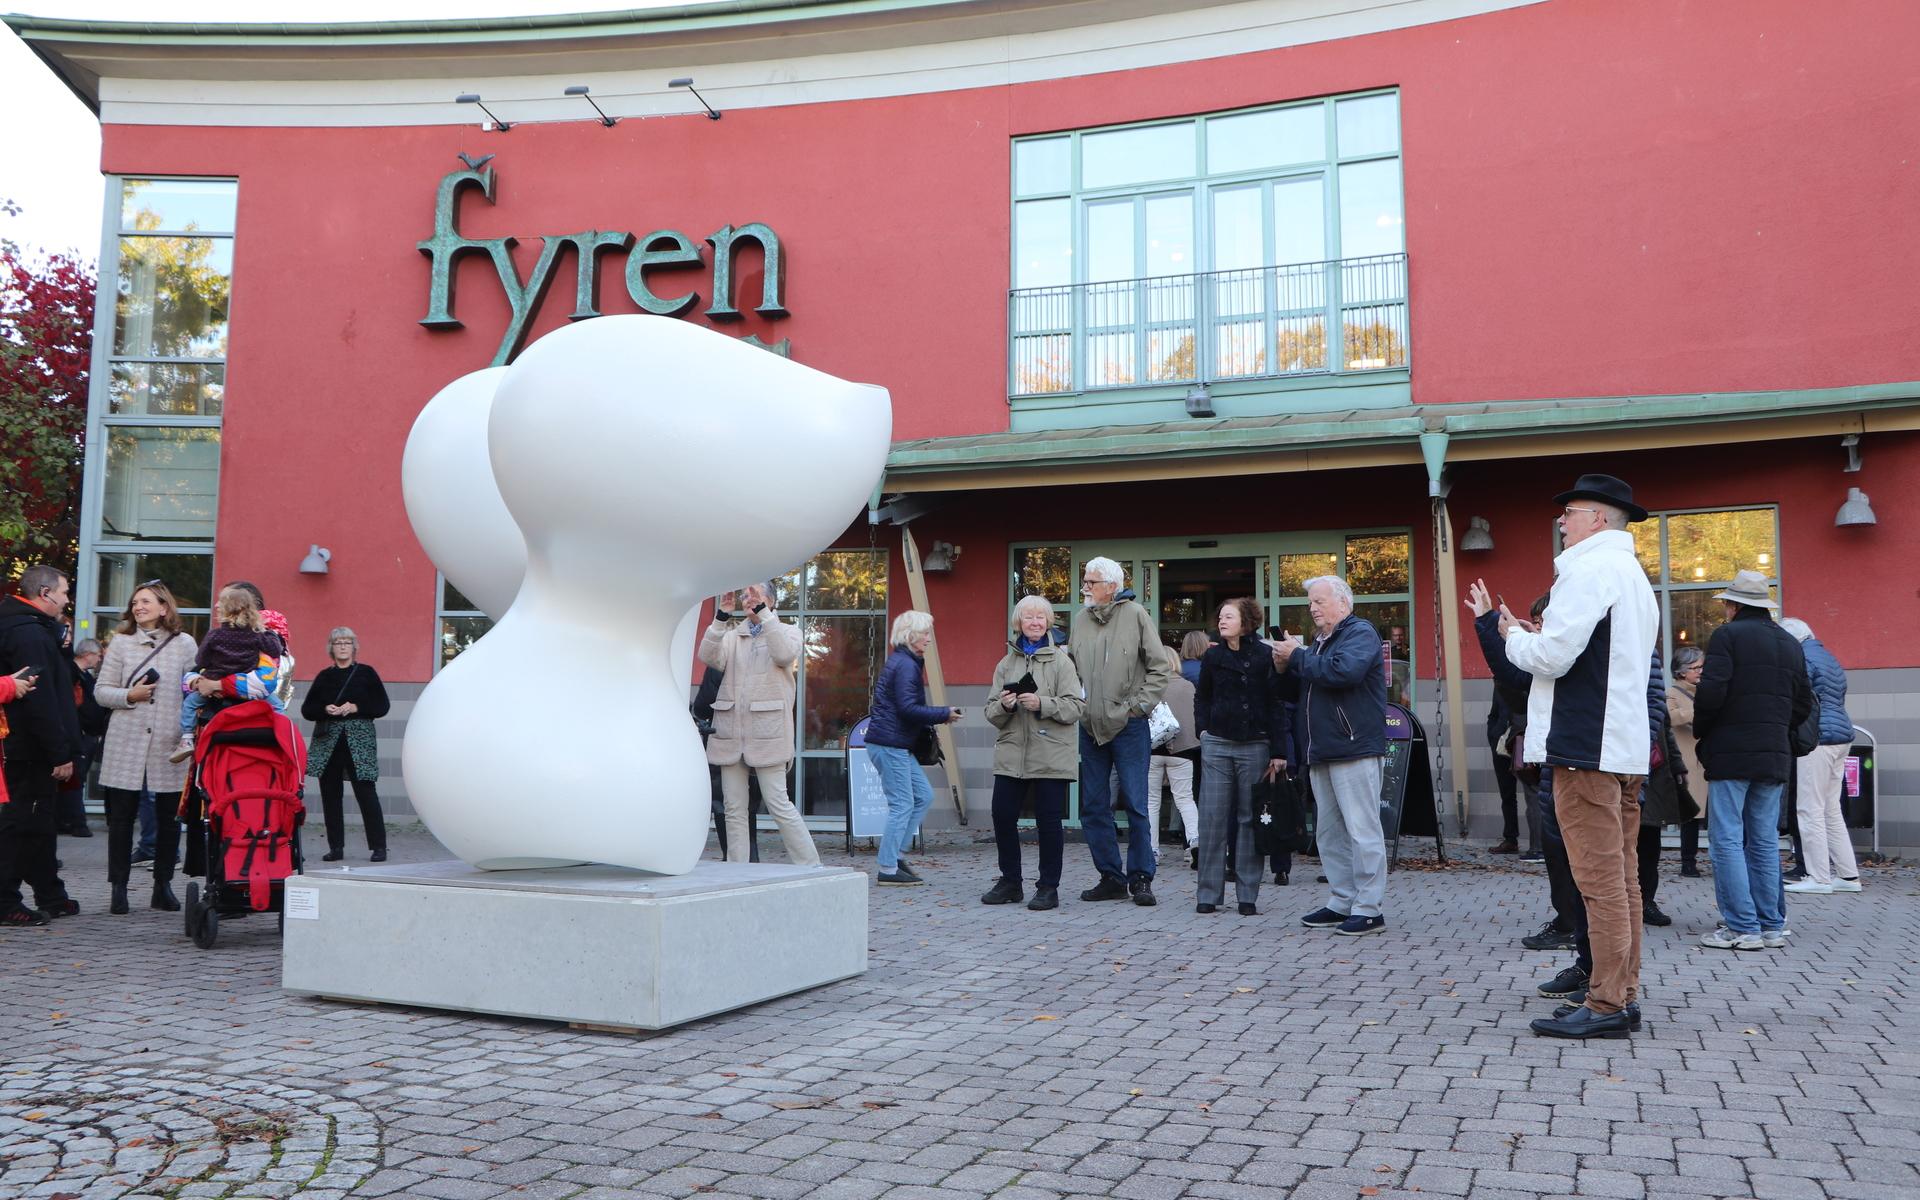 Konsten vecka invigdes utanför kulturhuset Fyren i Kungsbacka.